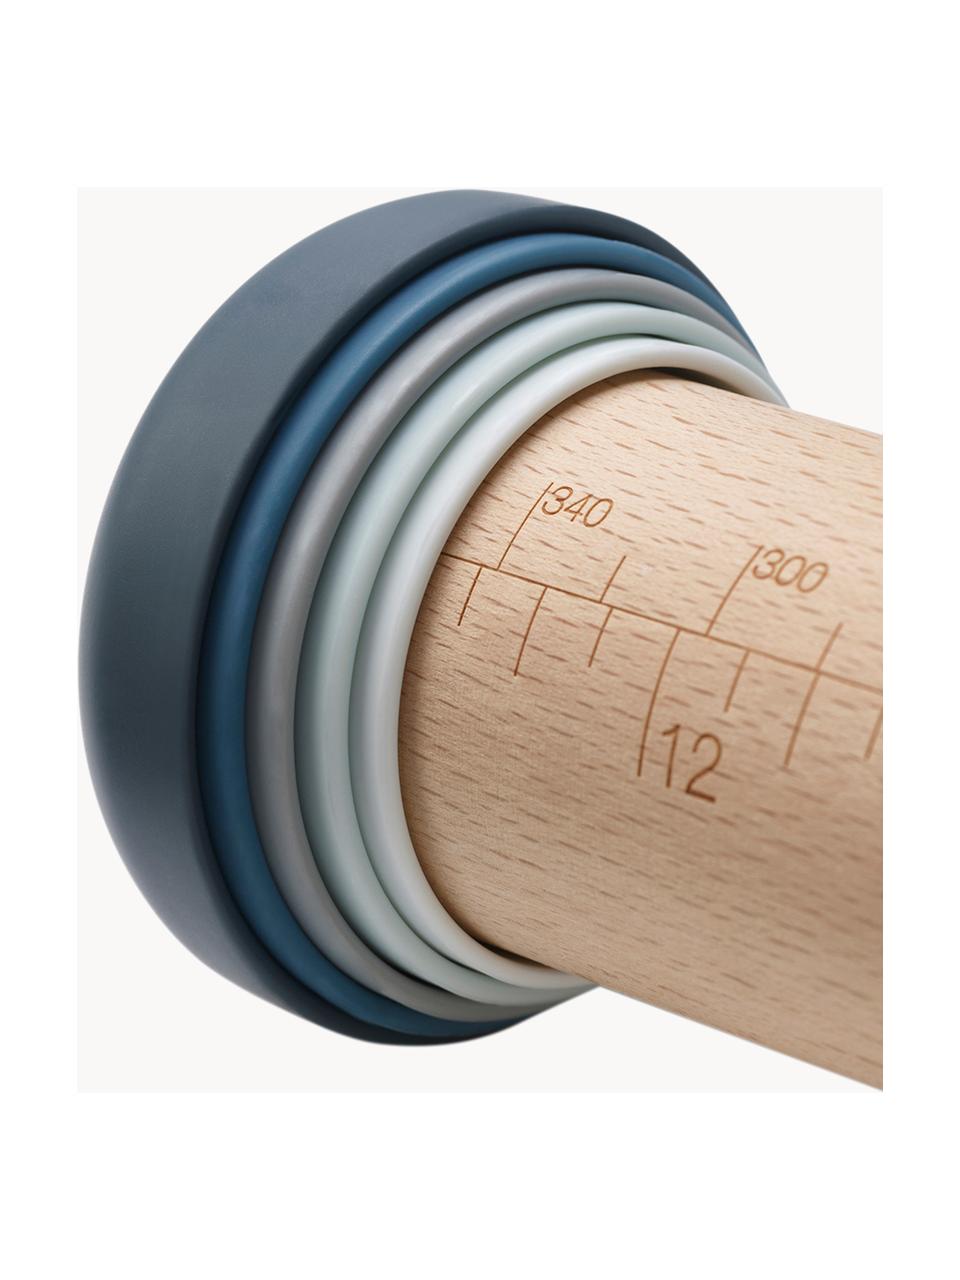 Váleček z bukového dřeva Precision Pin, Bukové dřevo, umělá hmota, Bukové dřevo, Š 6 cm, D 42 cm